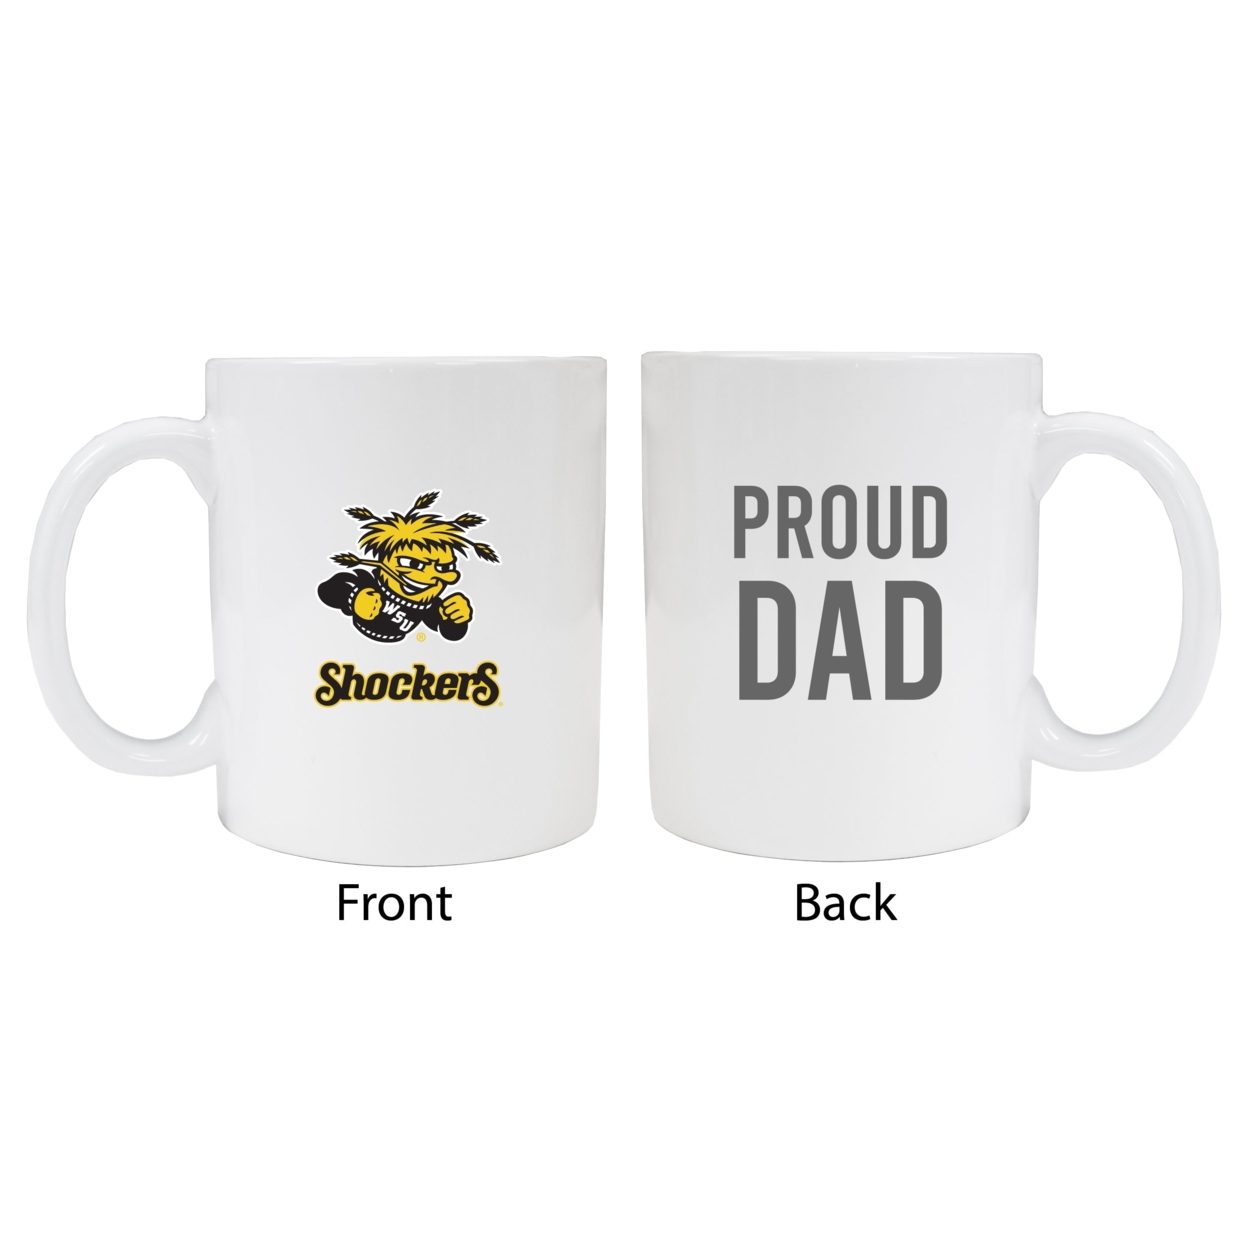 Wichita State Shockers Proud Dad Ceramic Coffee Mug - White (2 Pack)